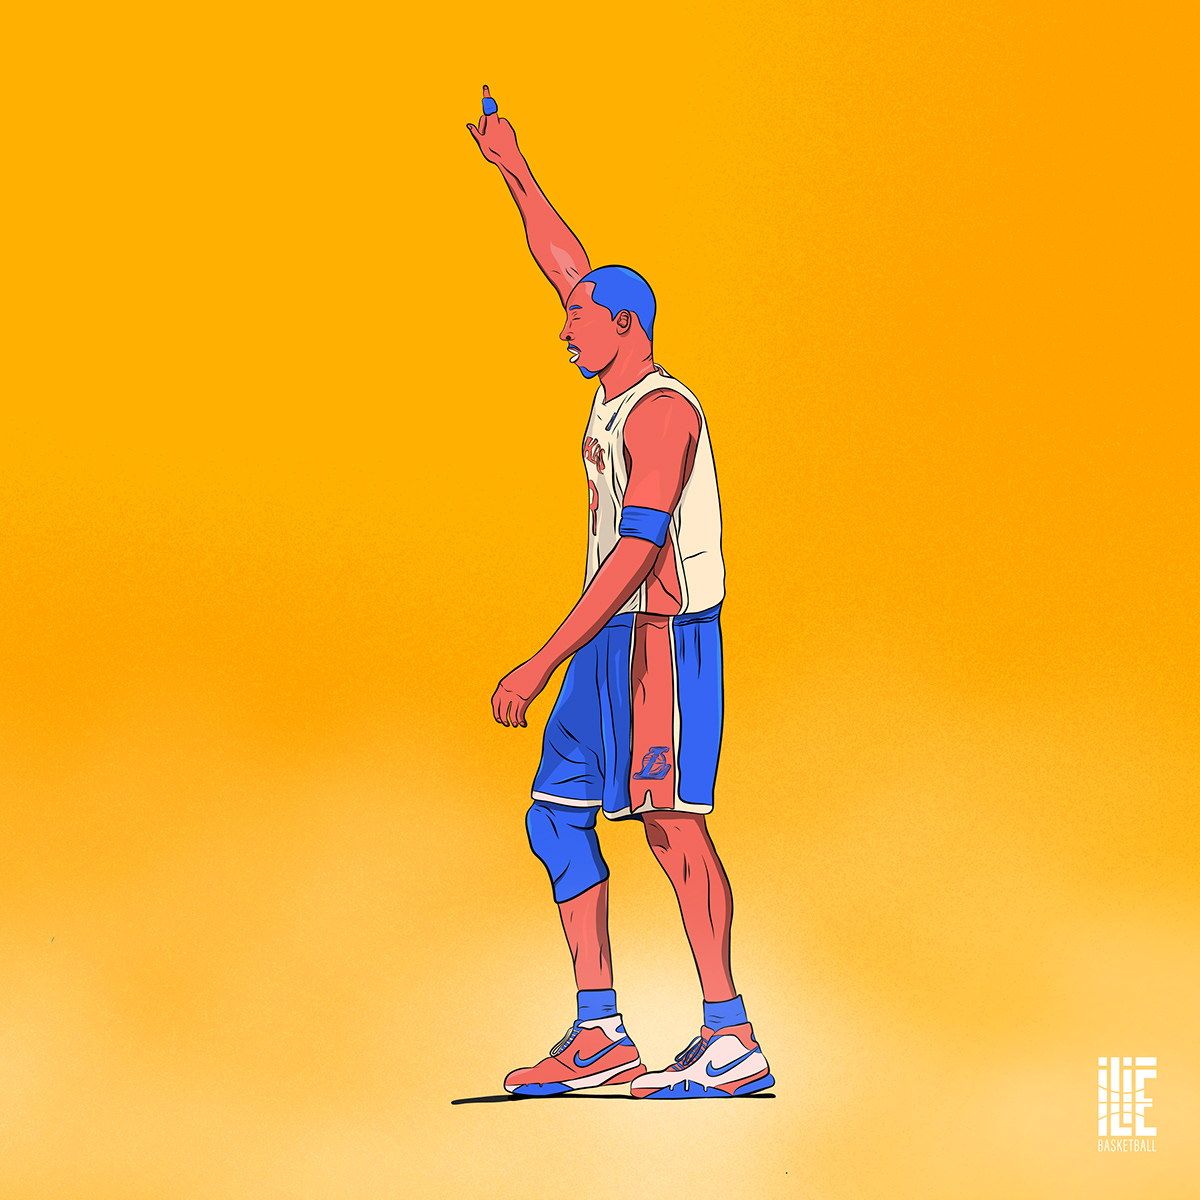 Adobe Portfolio adobe draw basketball illustrations Illustrator iPad ipad pro NBA